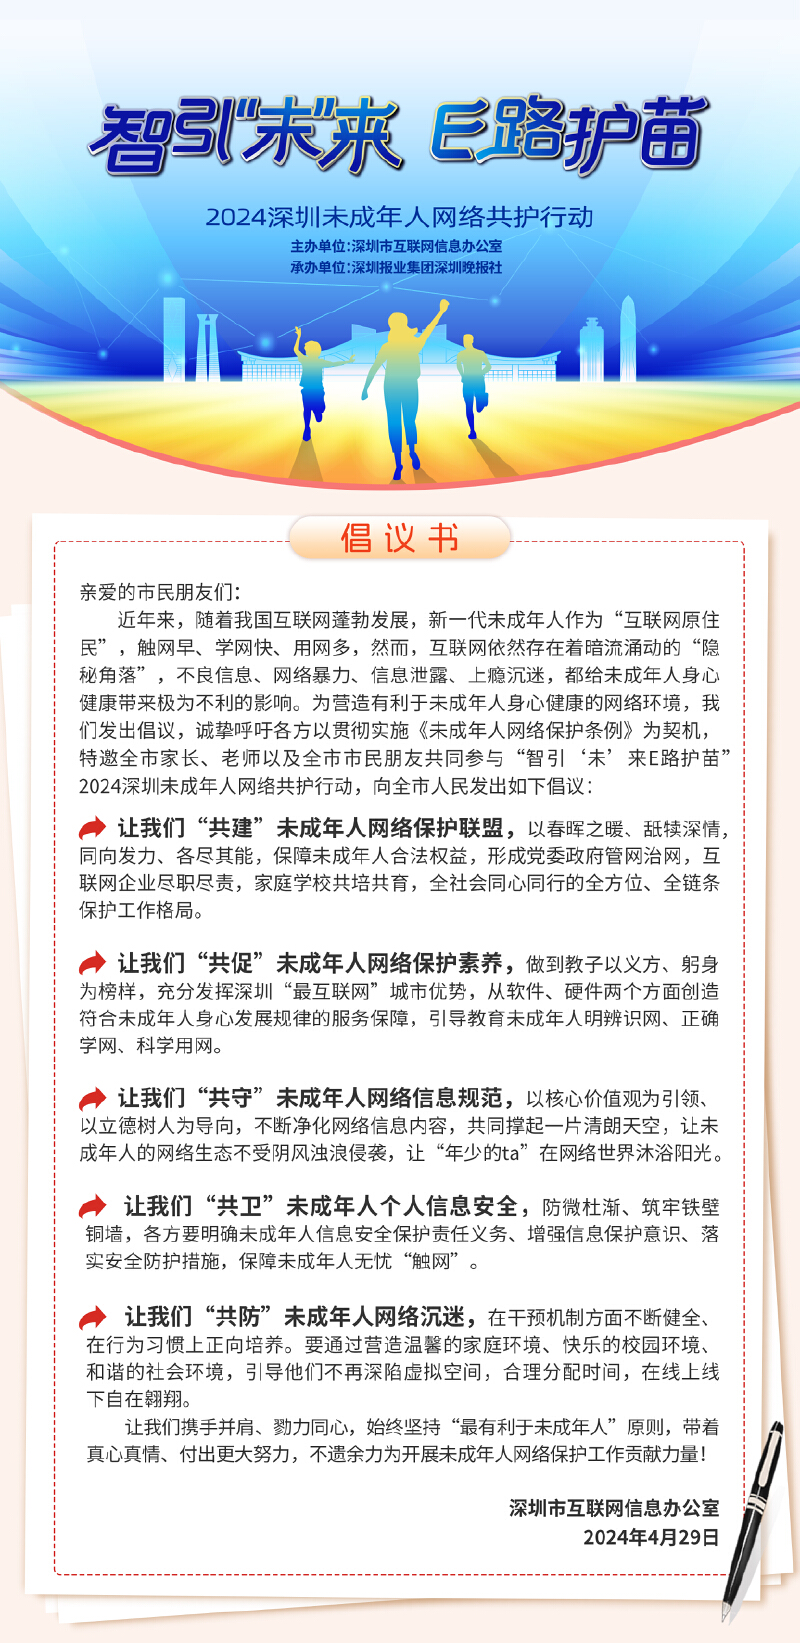 2024深圳未成年人网络共护行动获各界积极响应 首场进校园活动圆满举办